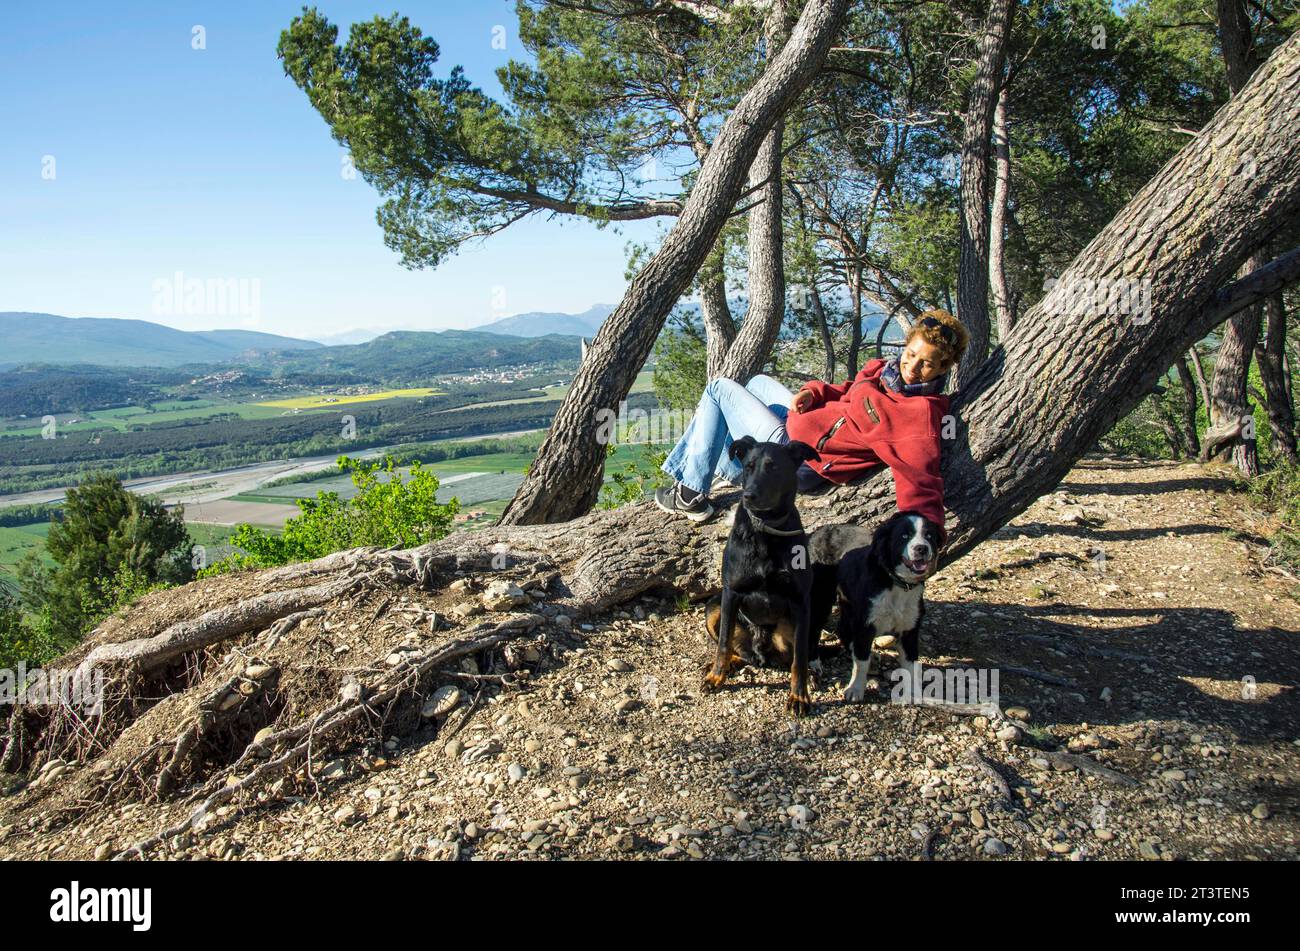 Donna di razza mista che riposa su un tronco inclinato mentre cammina i suoi cani in cima alle "Pénitents", formazioni rocciose alte 100 metri che si affacciano sul villaggio di Les Mées e sull'area circostante. Alpes de Haute Provence, Francia. Foto Stock